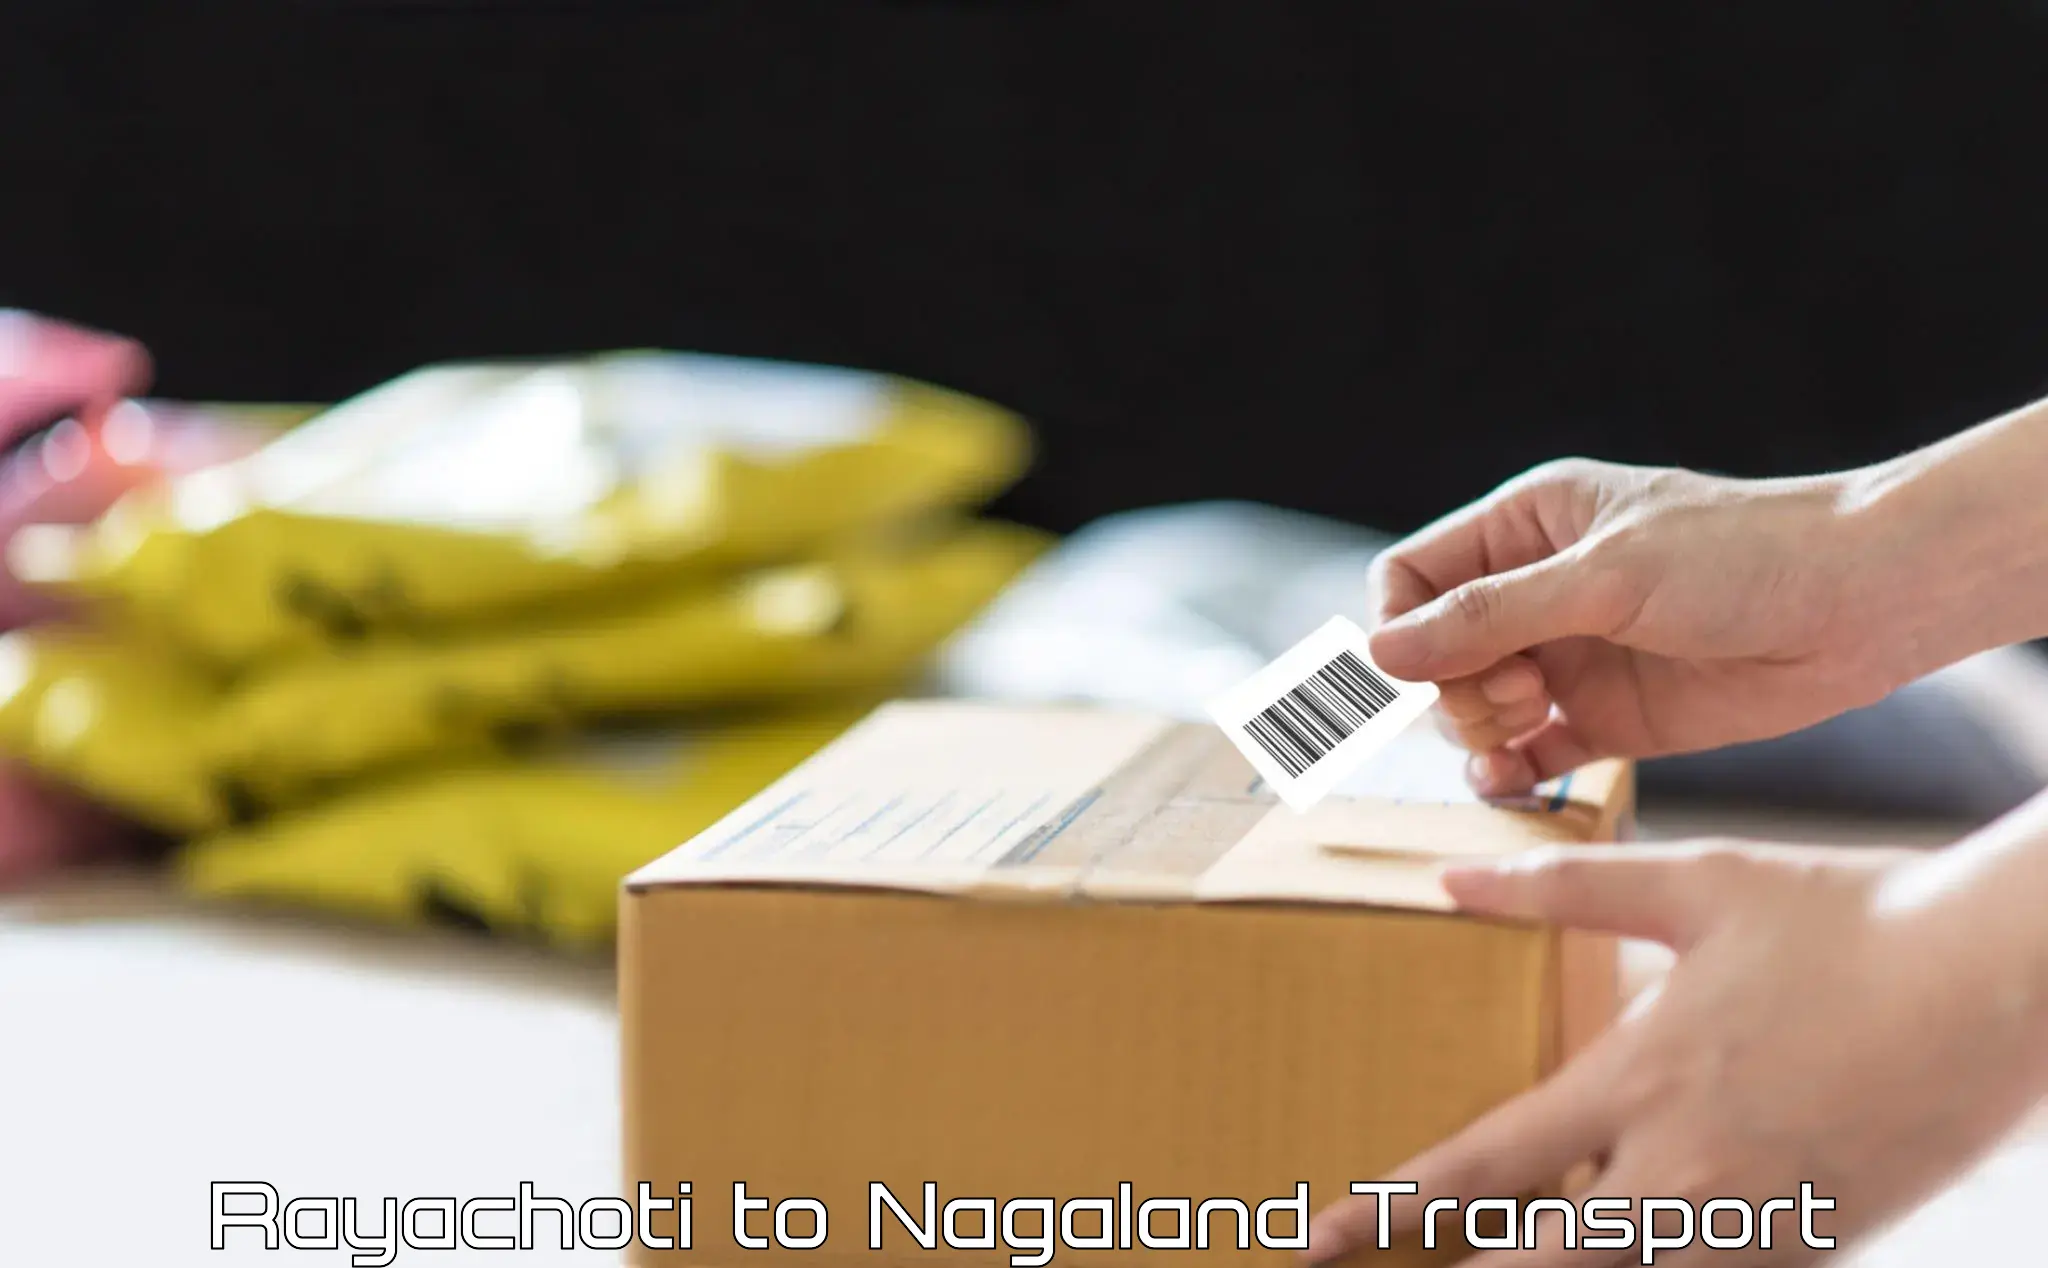 Online transport service Rayachoti to NIT Nagaland